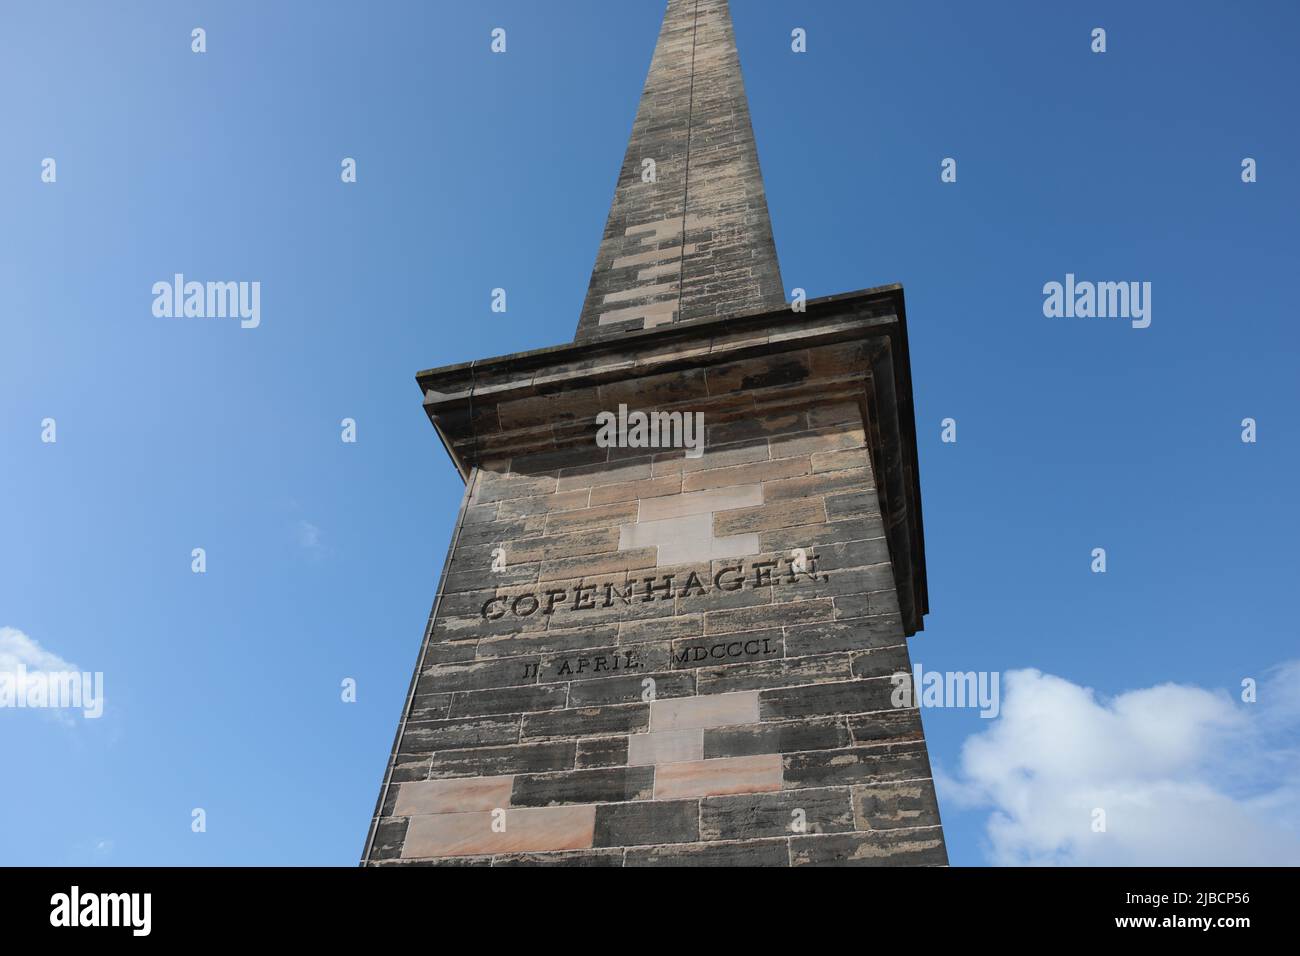 Vue sur le monument de Nelson, à Glasgow Green Park, Glasgow, Écosse. Ciel bleu derrière. Banque D'Images